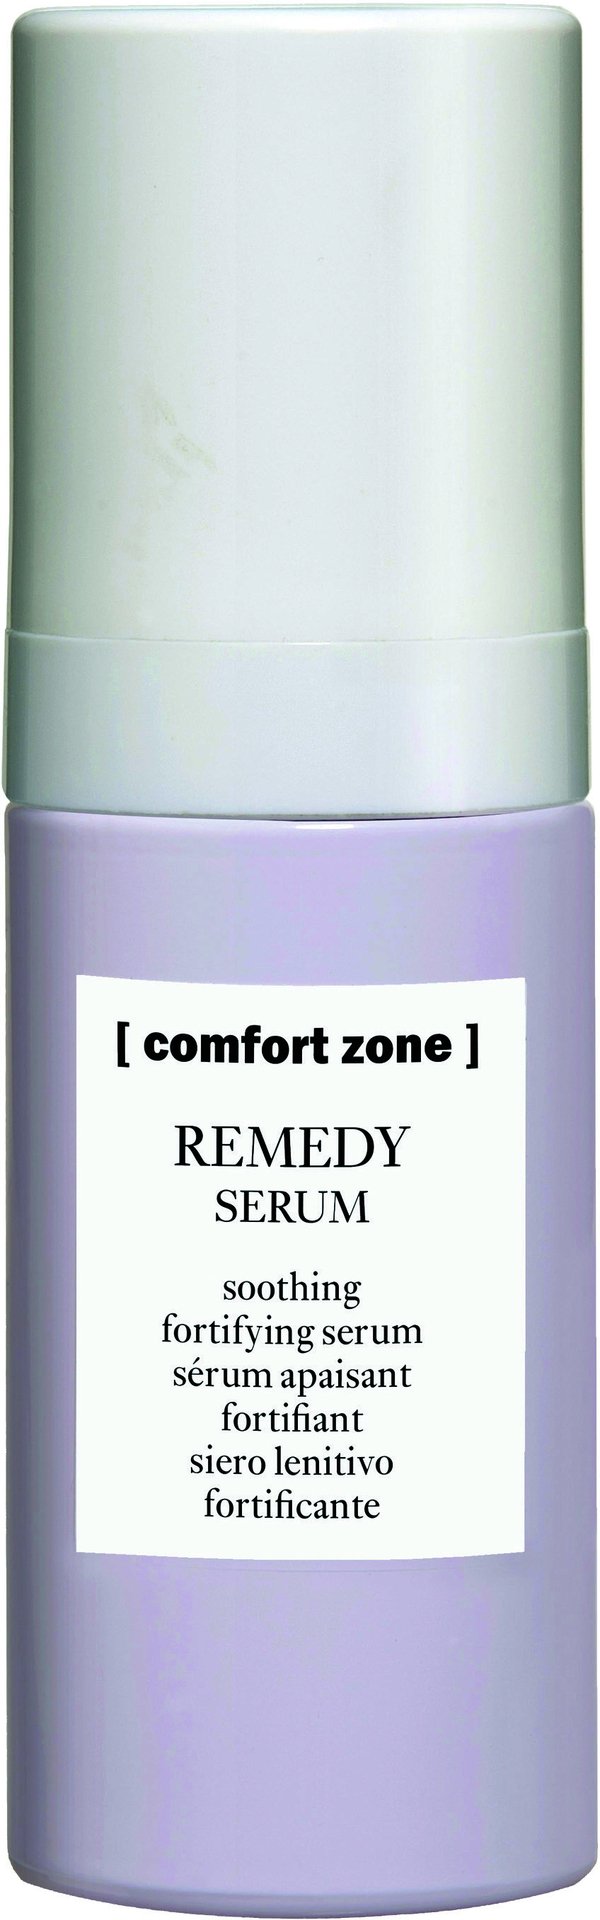 Comfort Zone Remedy Serum 30ml